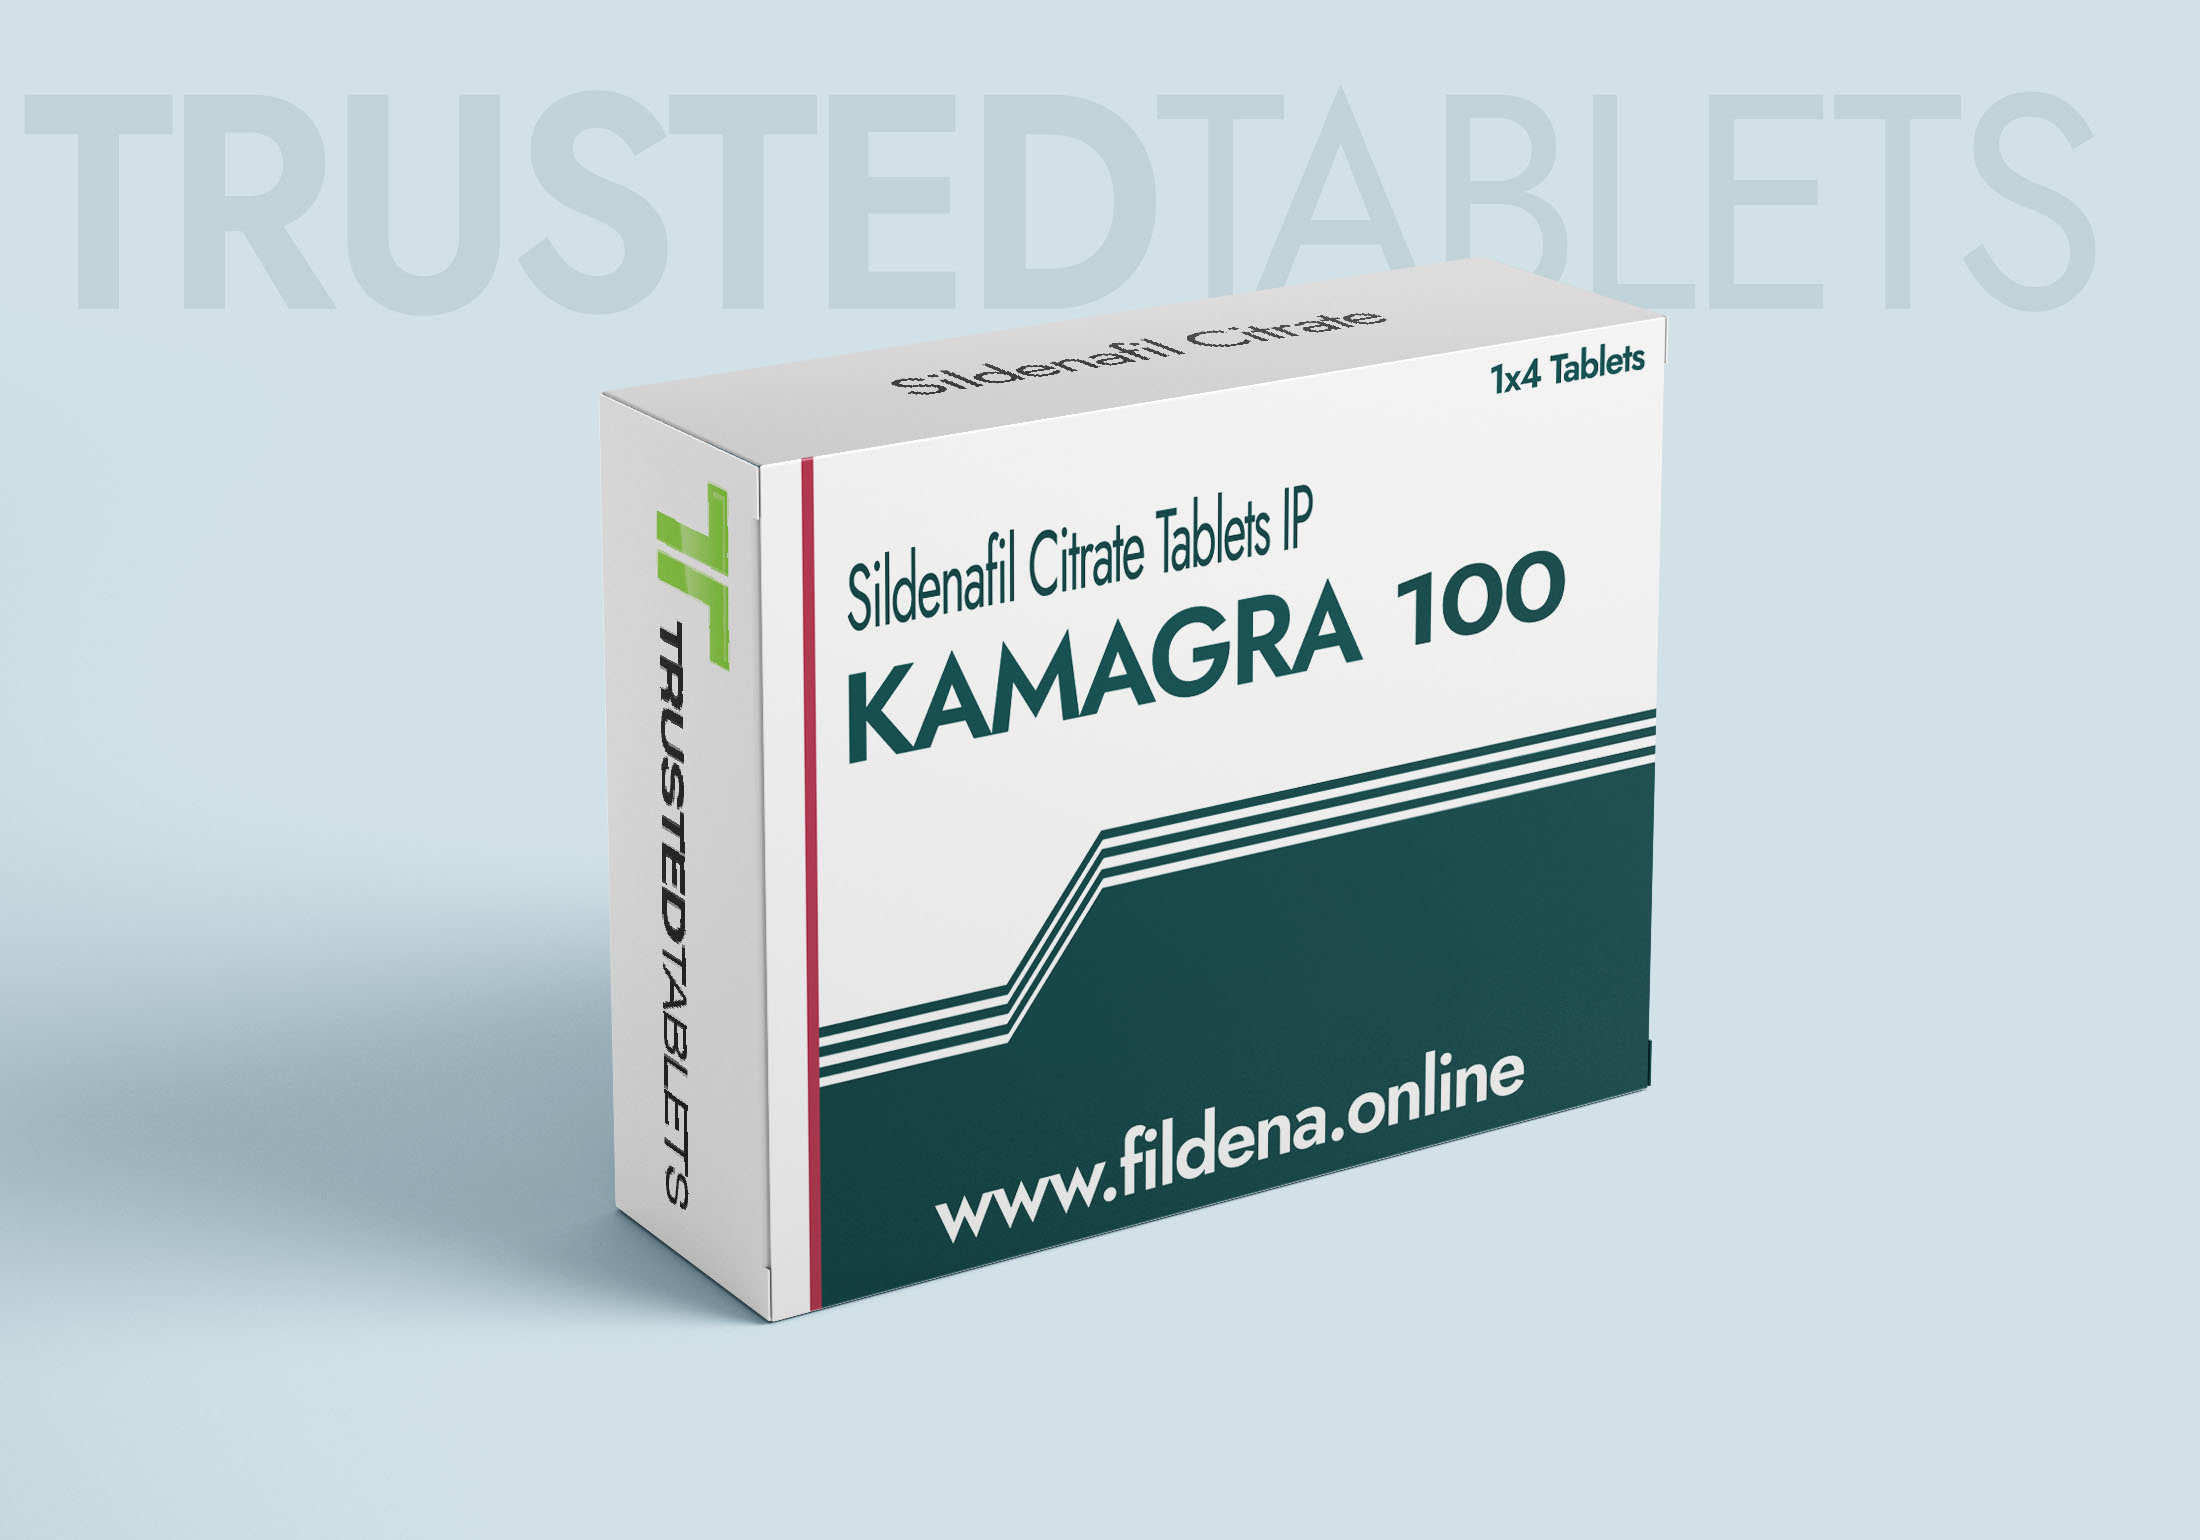 Kamagra TrustedTablets